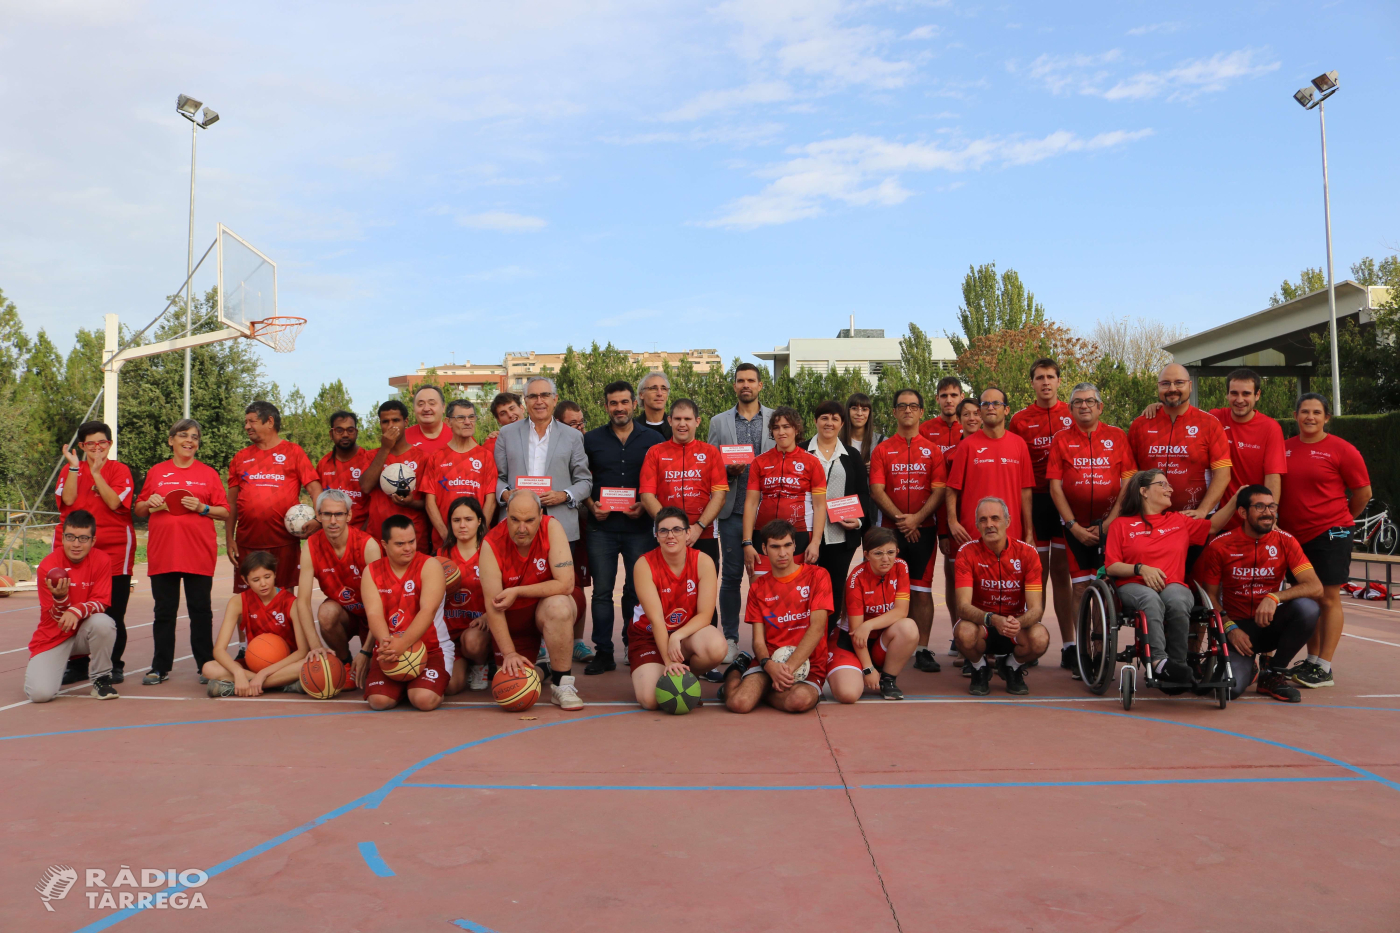 El Club Esportiu Alba presenta els seus equips oficials i patrocinadors en una temporada marcada per la participació als Specials Olympics Catalunya